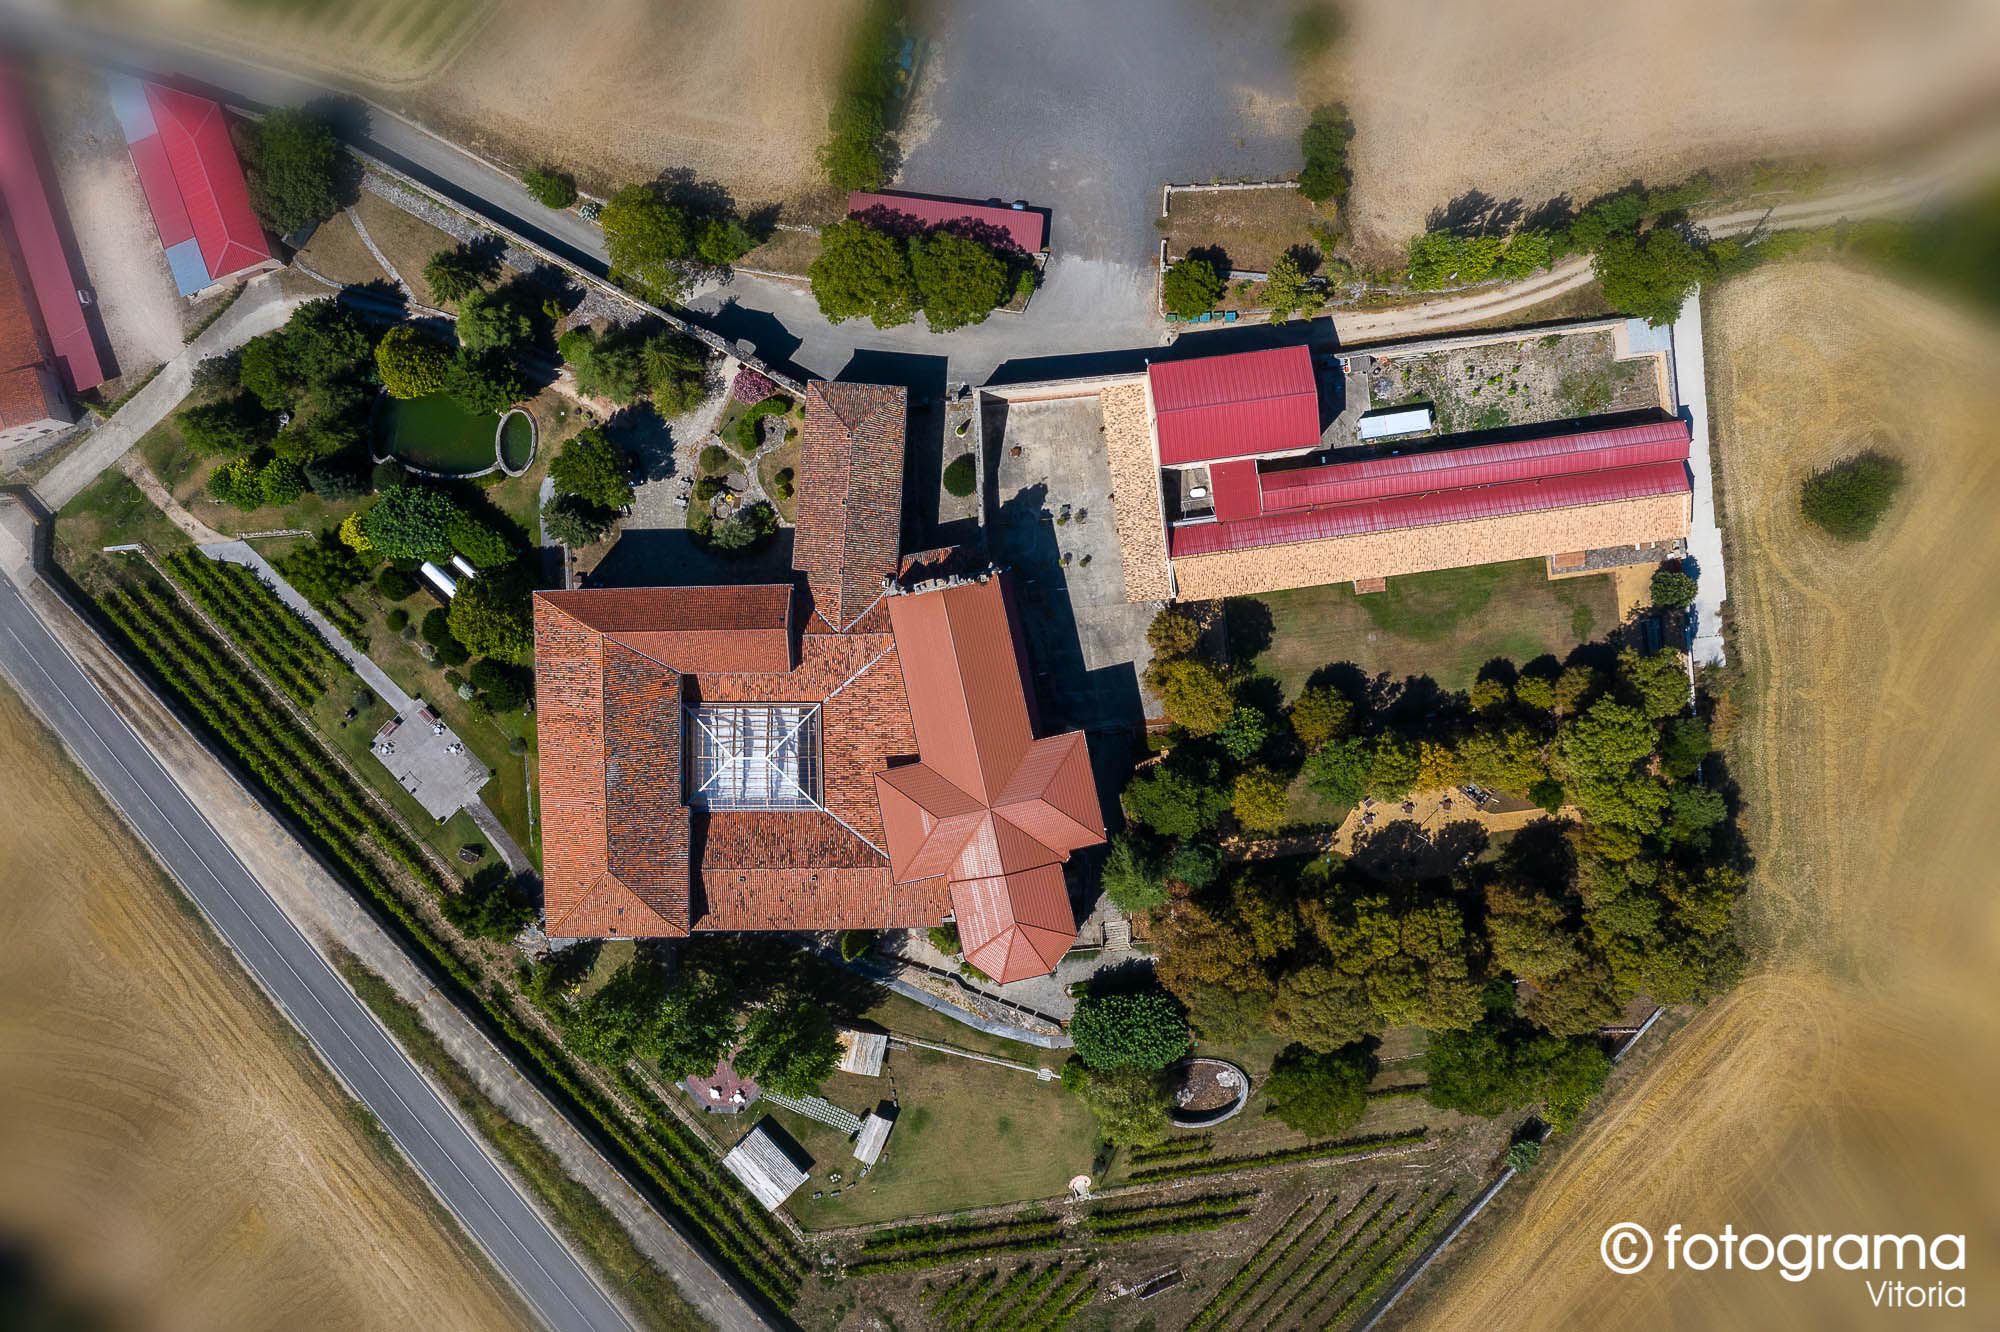 Fotograma Vitoria - 001-foto-aerea-del-monasterio-del-espino-en-santa-gadea-del-cid-fotogramavitoria-fotografo.jpg